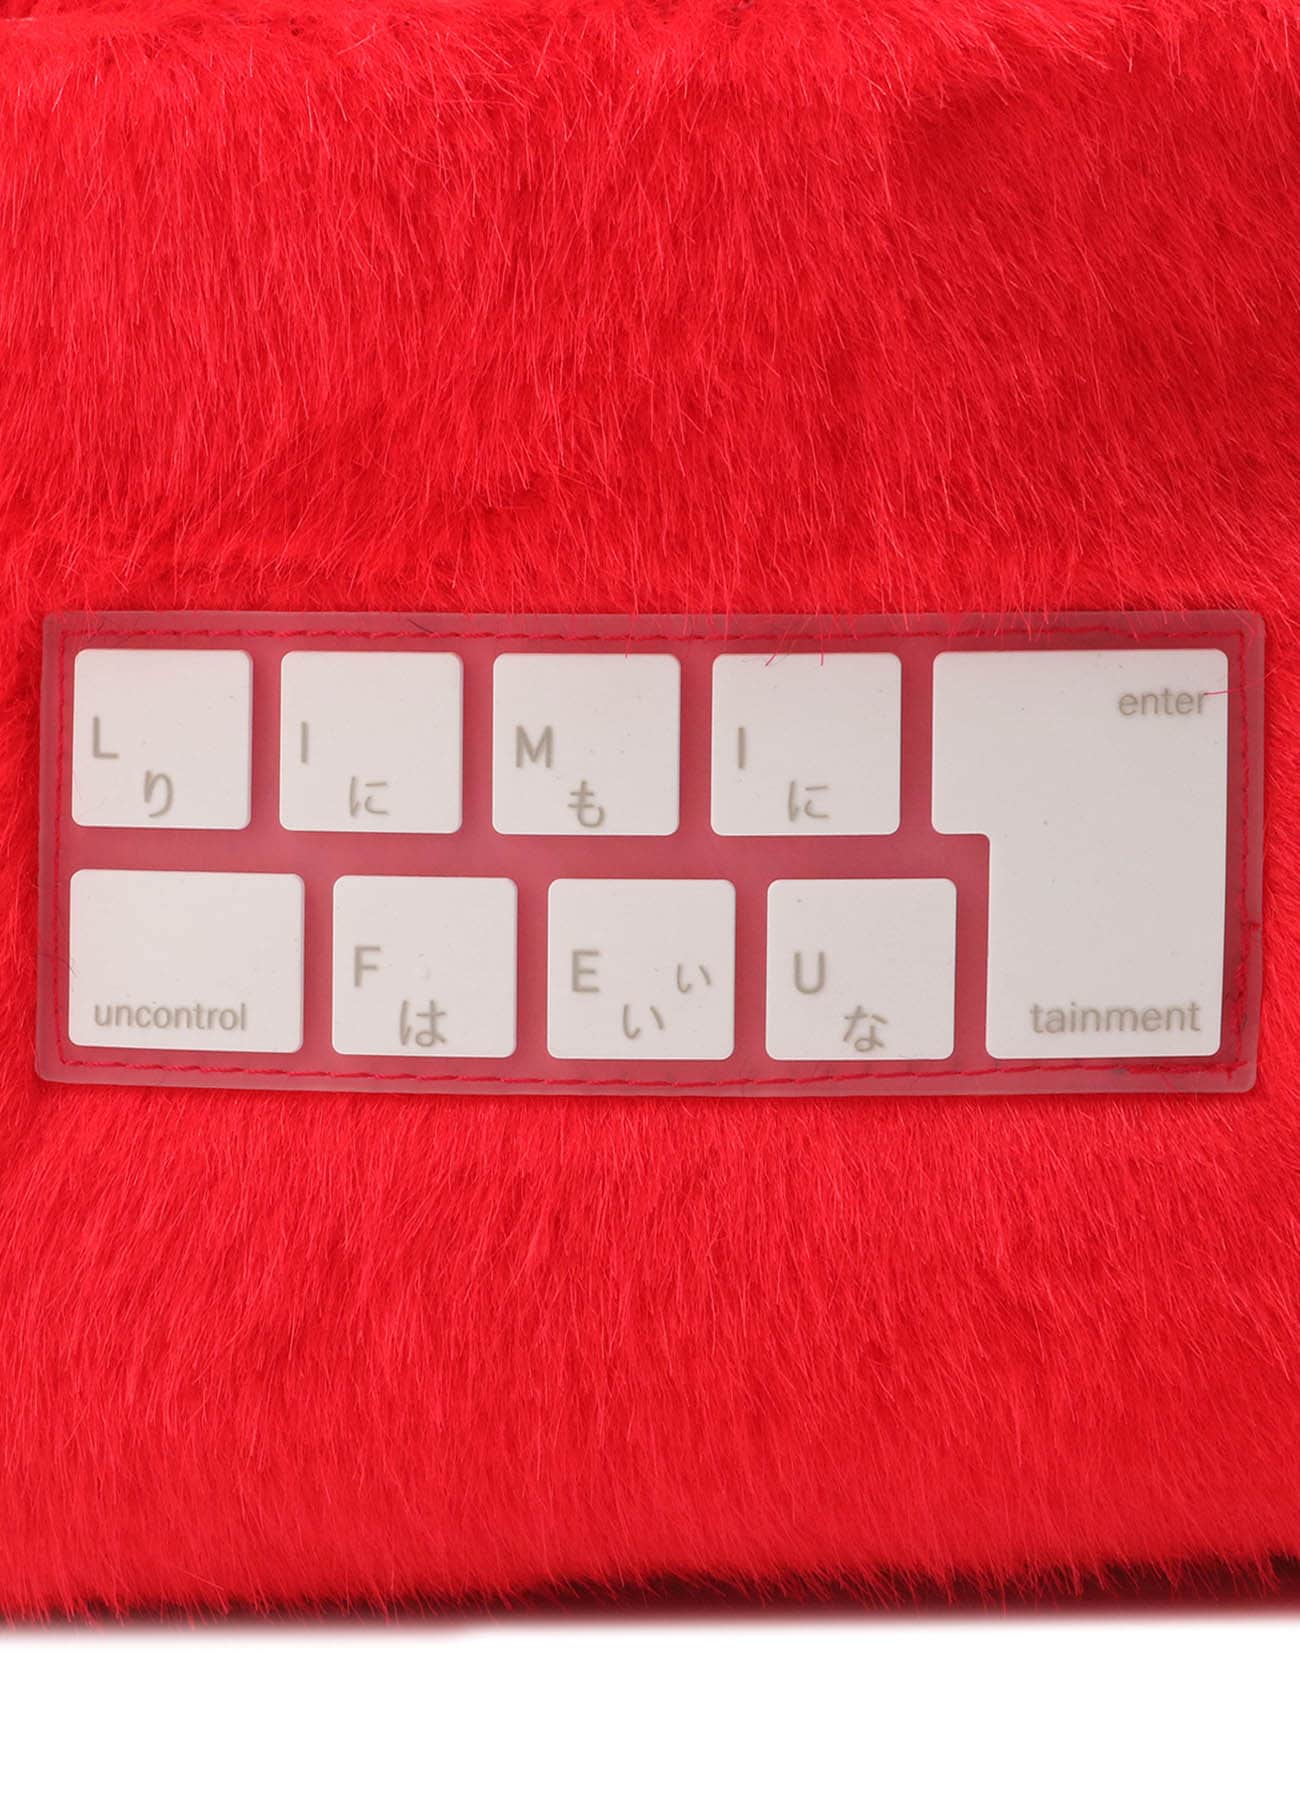 Fake Fur Silicon Keyboard Bag